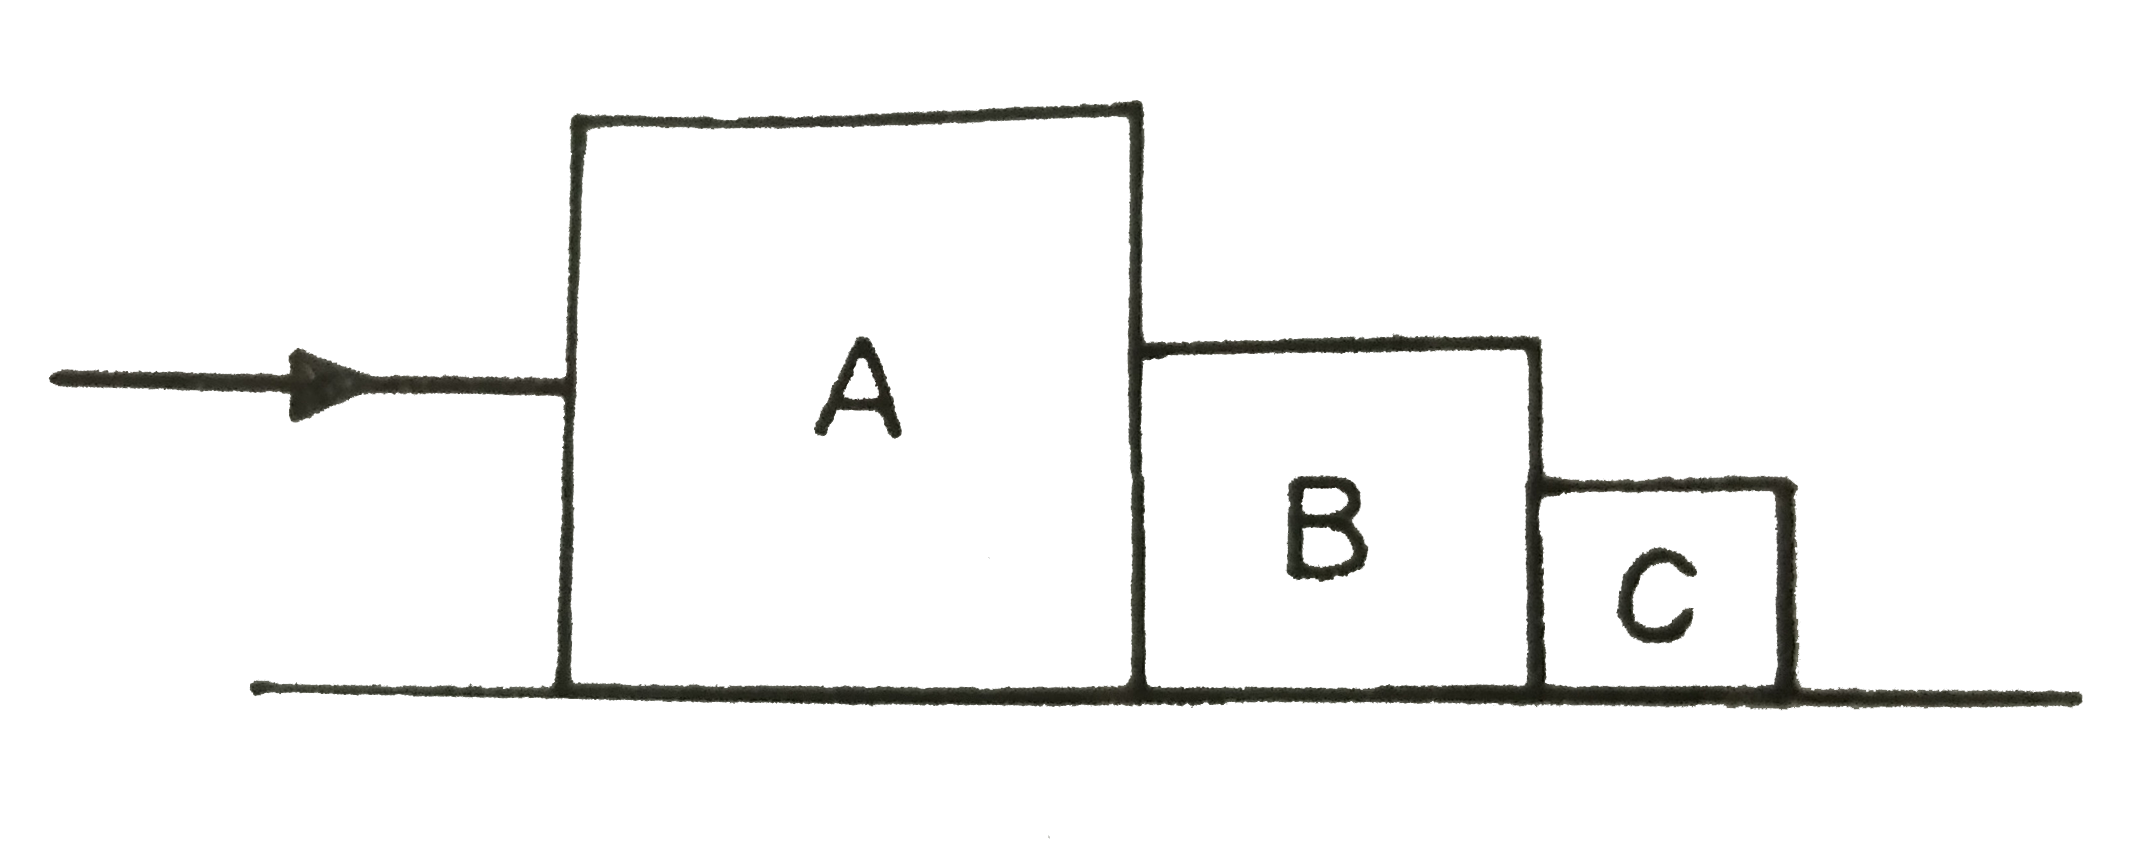 तीन गुटके A ,B तथा C जिनके द्रव्यमान क्रमशः 4 किग्रा, 2 किग्रा तथा 1 किग्रा है एक घर्षणहीन पृष्ट पर परस्पर संपर्क में रखे गए है। यदि 4 किग्रा के गुटके पर 14 न्यूटन का बल लगाया गया है तो A तथा B के बीच संपर्क बल होगा: